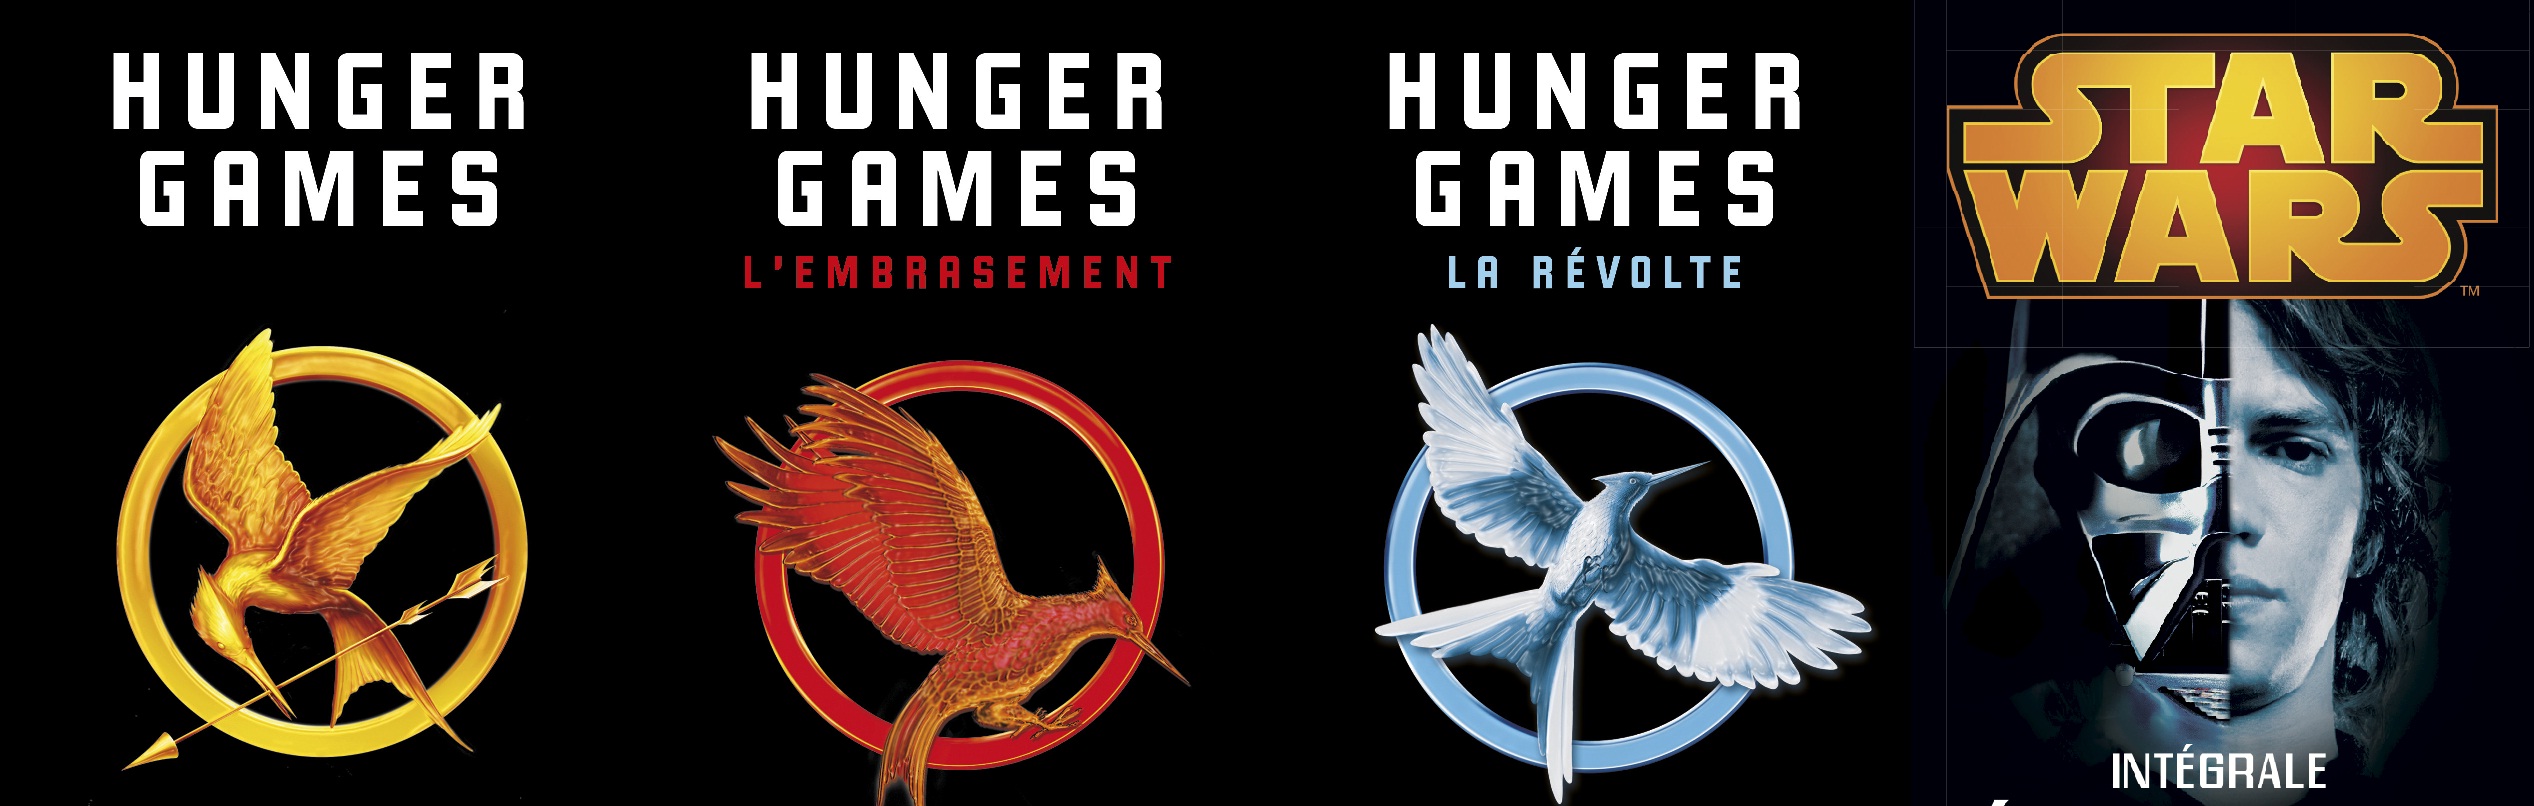 concours - [Concours terminé] Hunger Games et Star Wars : gagnez les livres des films CCR star wars hunger games couv